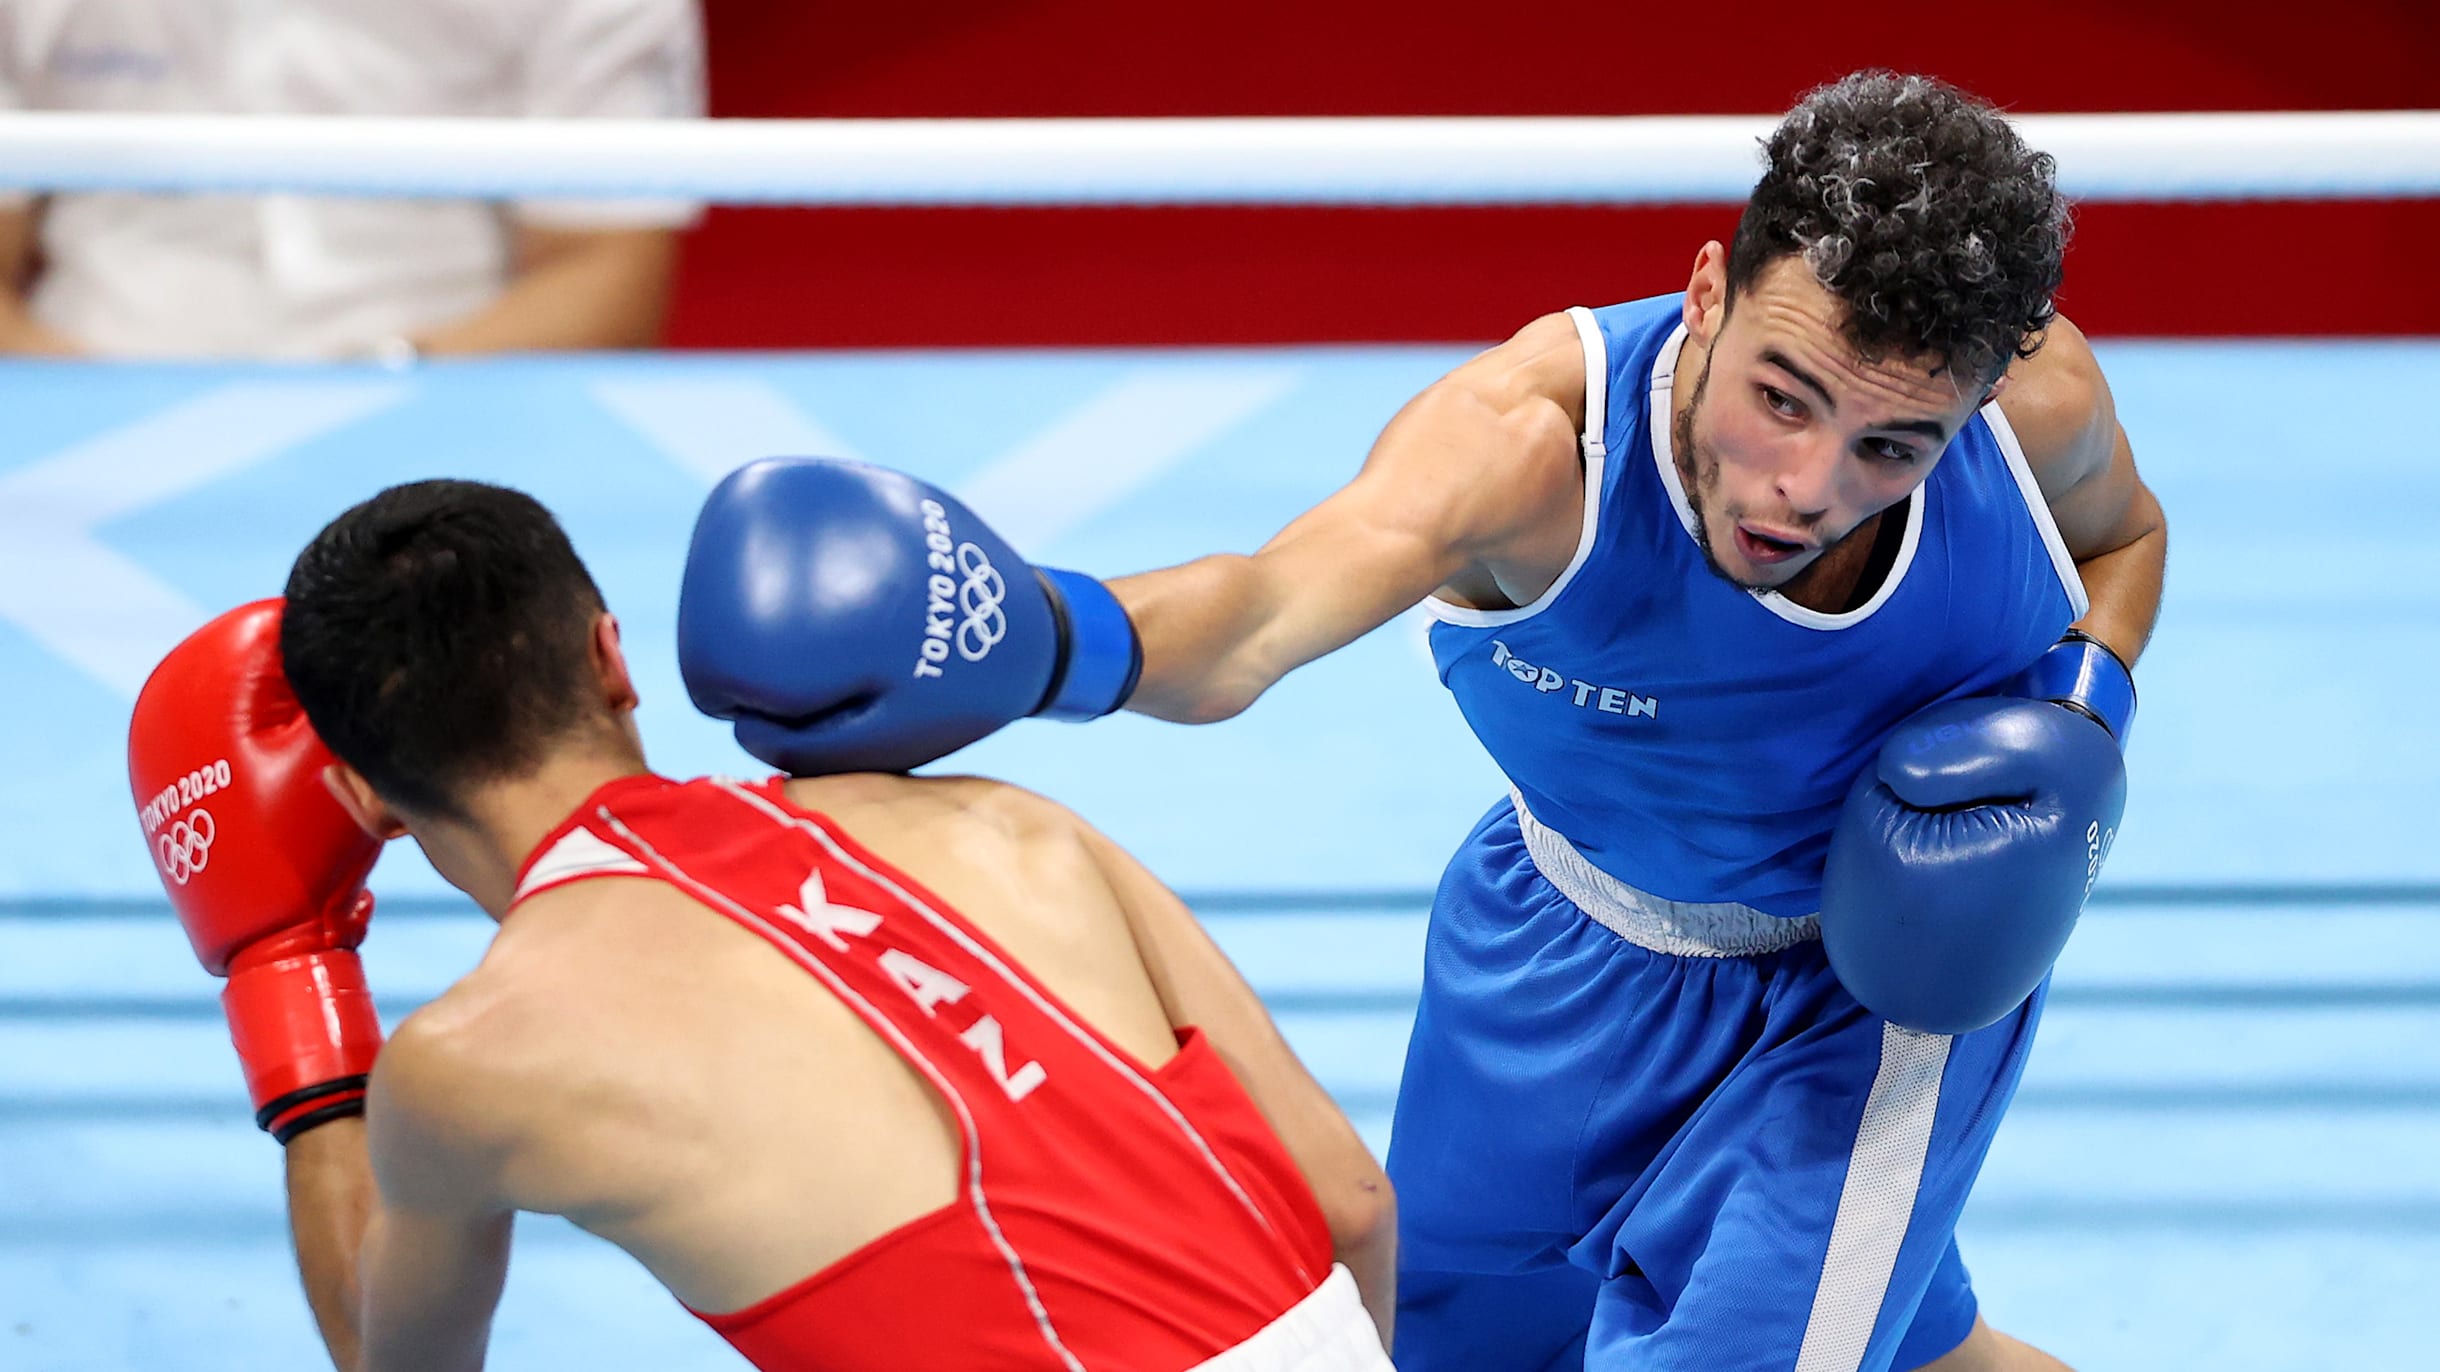 Boxe olympique vs boxe professionnelle : Quelles sont les différences ?